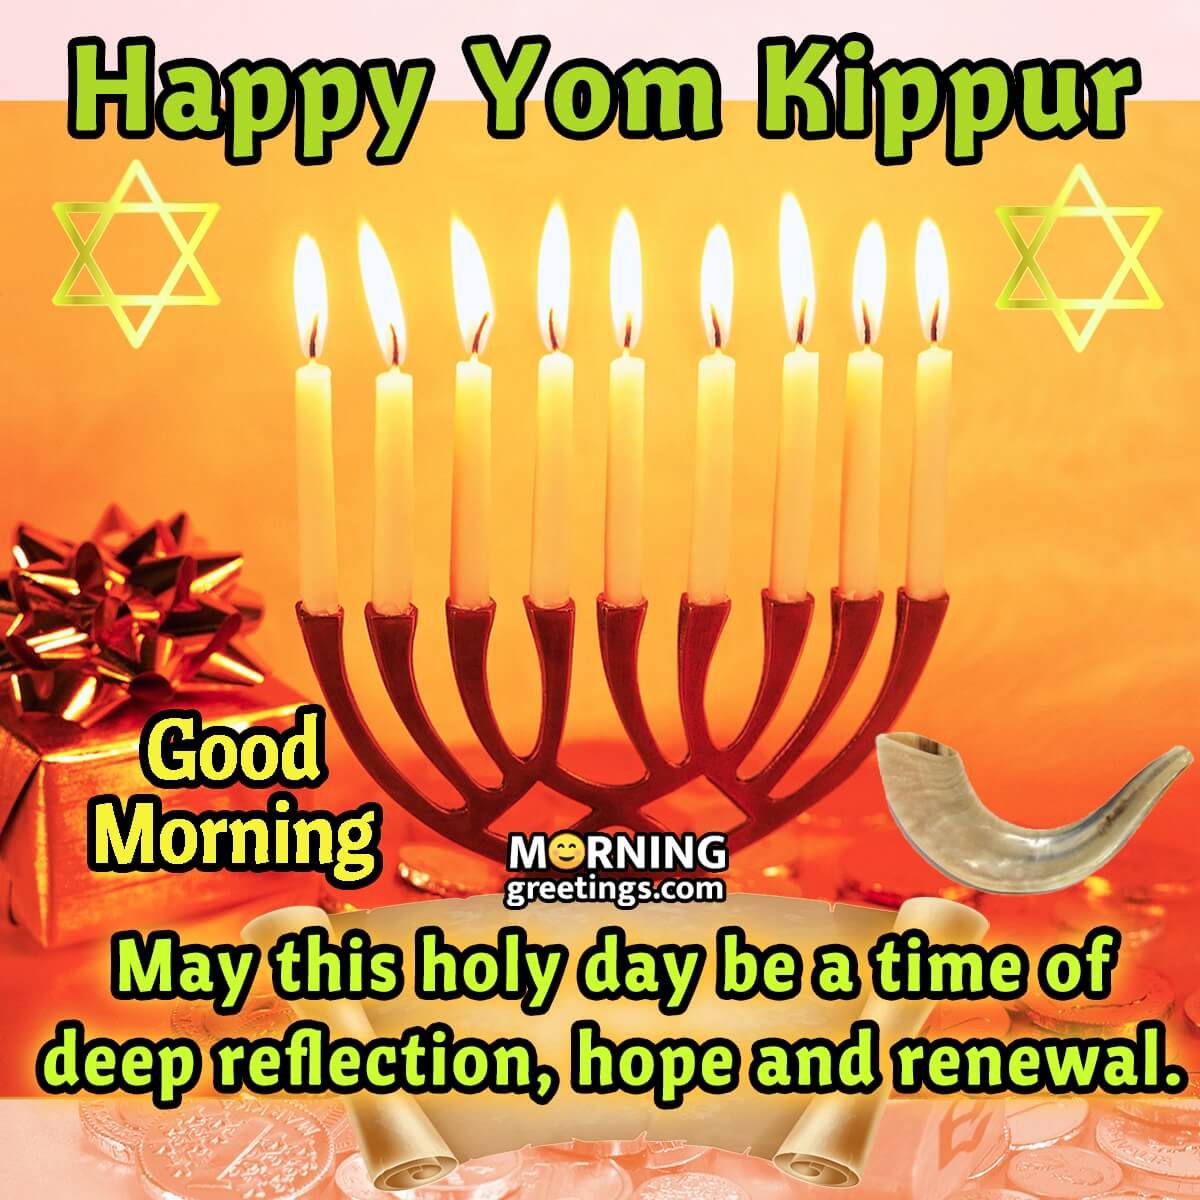 Good Morning Happy Yom Kippur